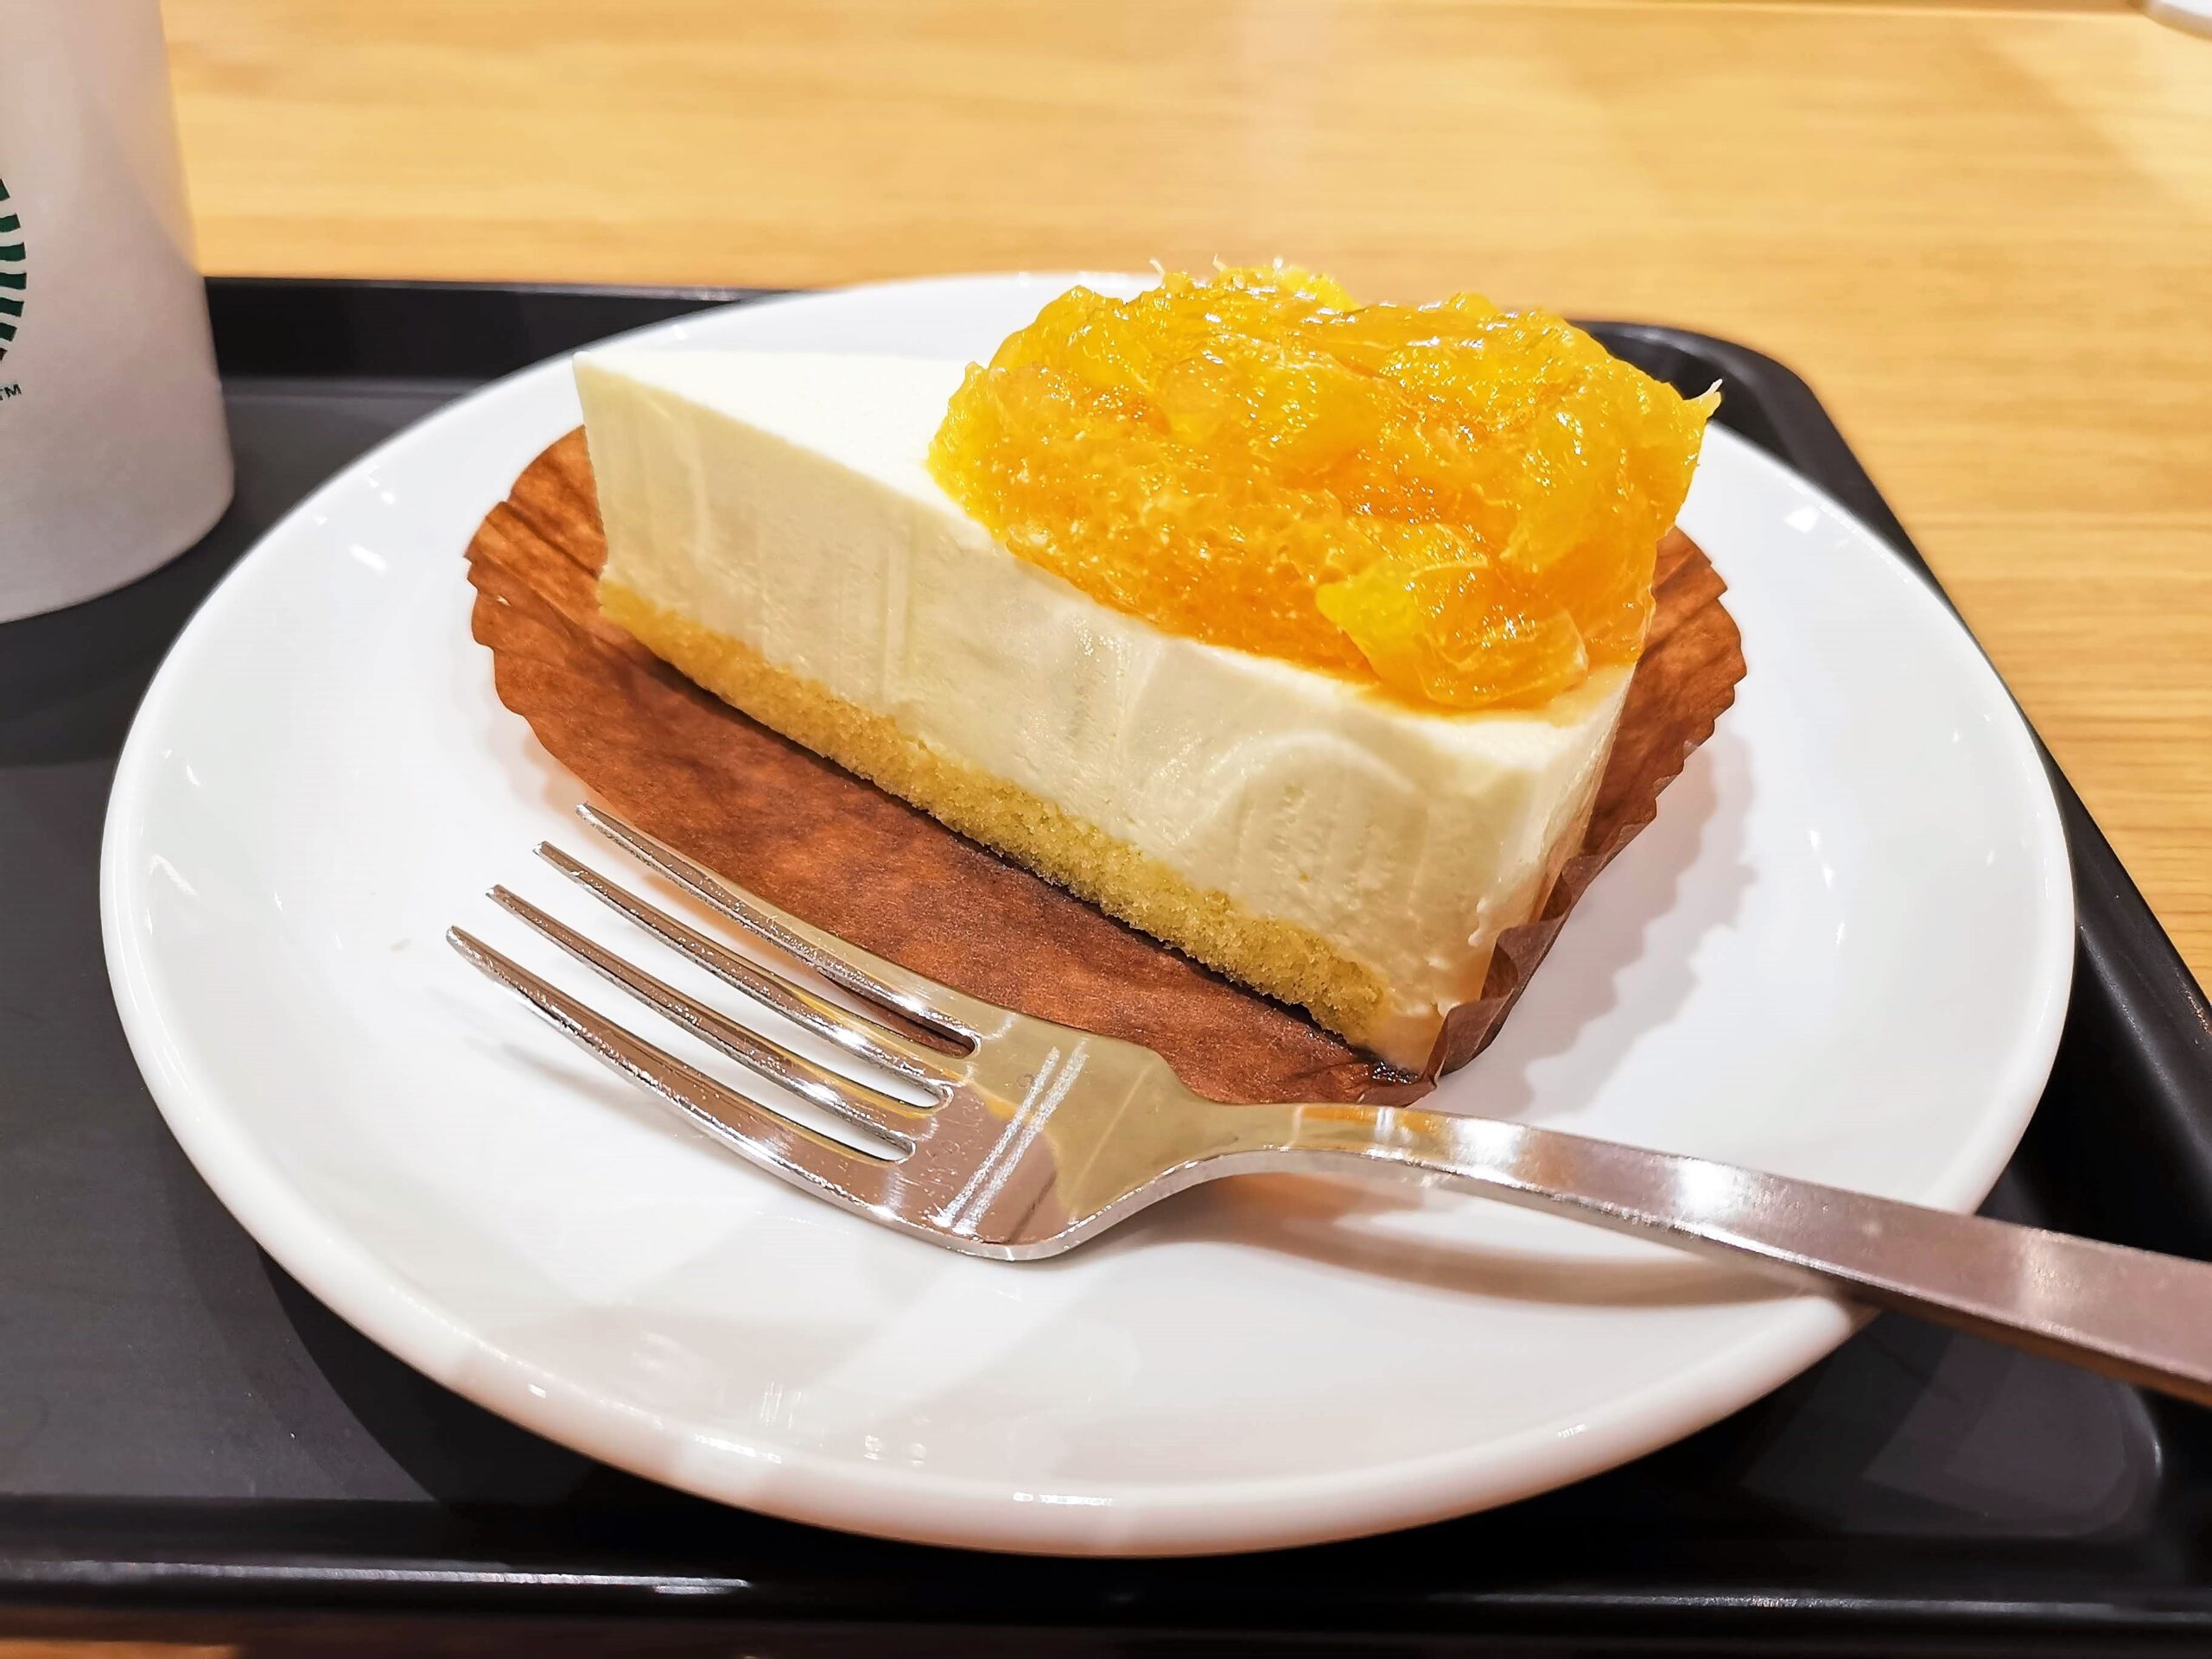 スターバックス オレンジ&レアチーズケーキの写真 (2)